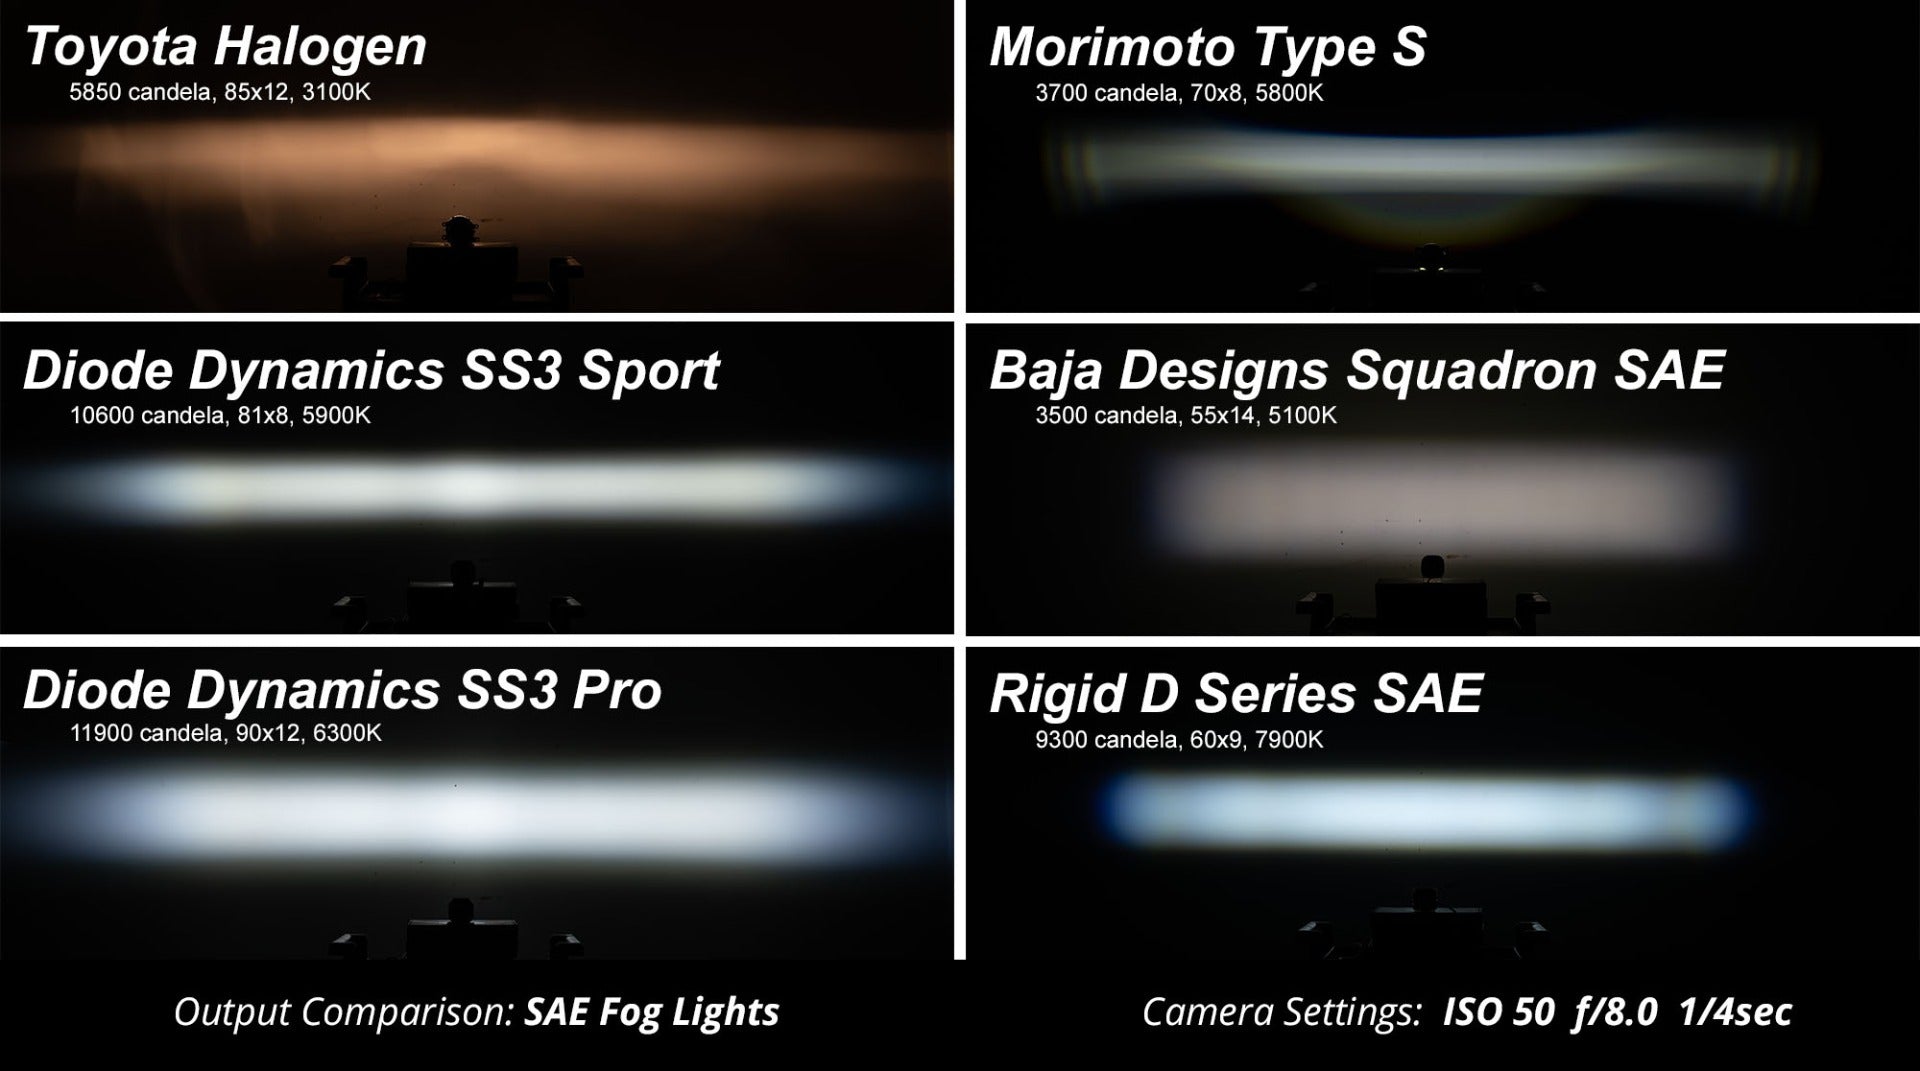 SS3 LED Fog Light Kit for 2015-2020 Chevrolet Suburban, Yellow SAE Fog Sport with Backlight Diode Dynamics